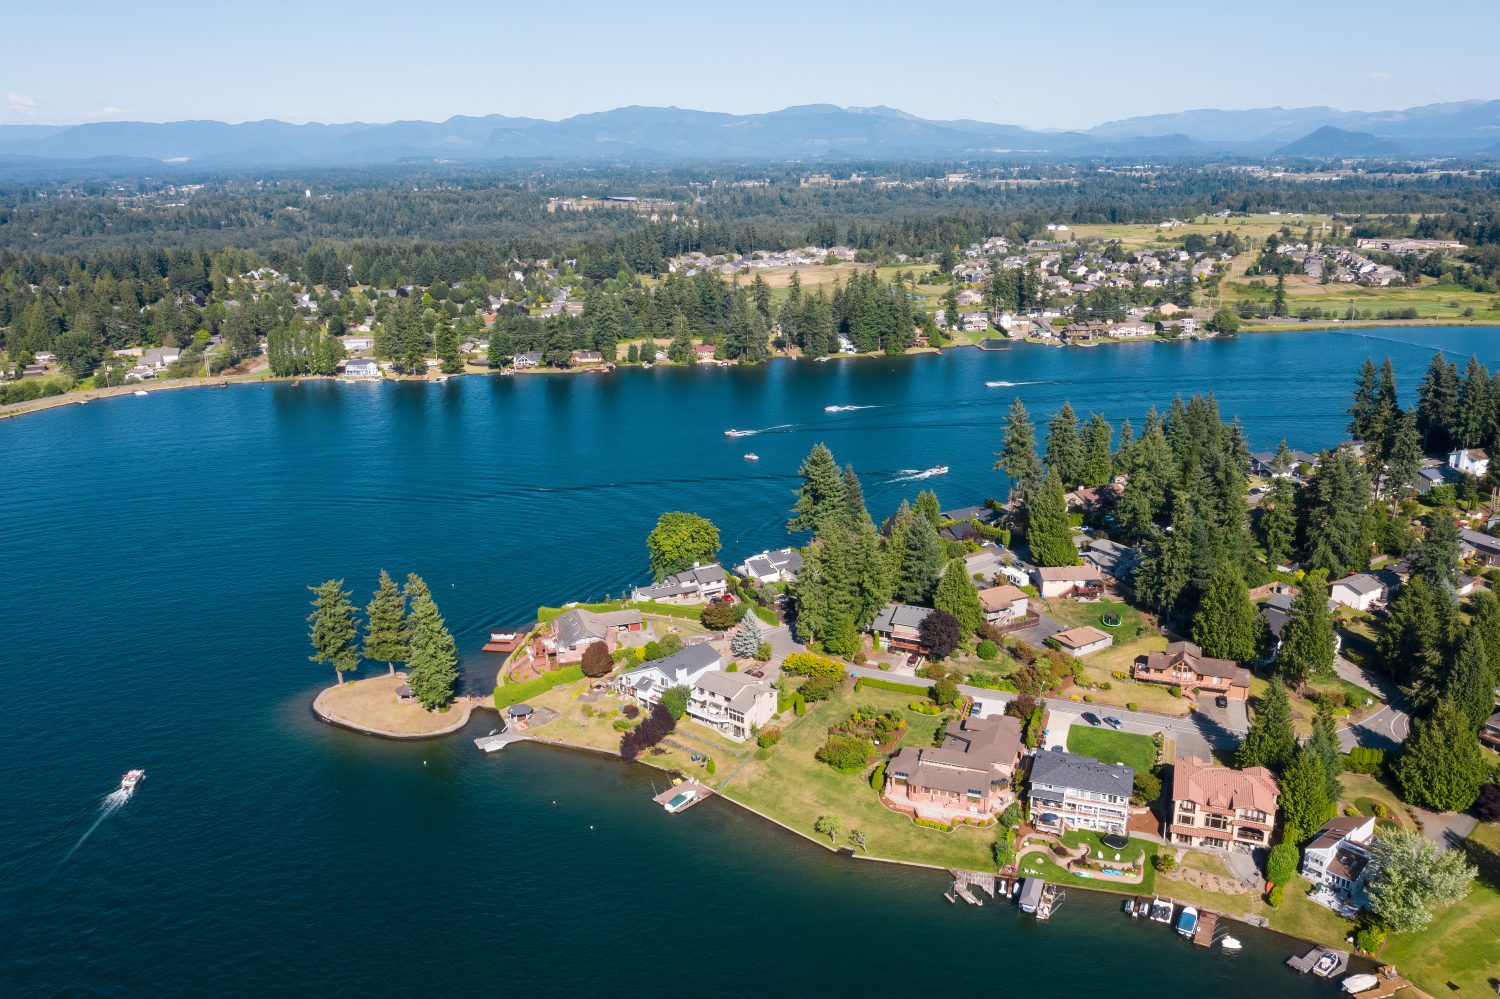 Stati Uniti d'America, nello Stato di Washington, Lago Tapps.  Case sul lungomare e barca nel lago.